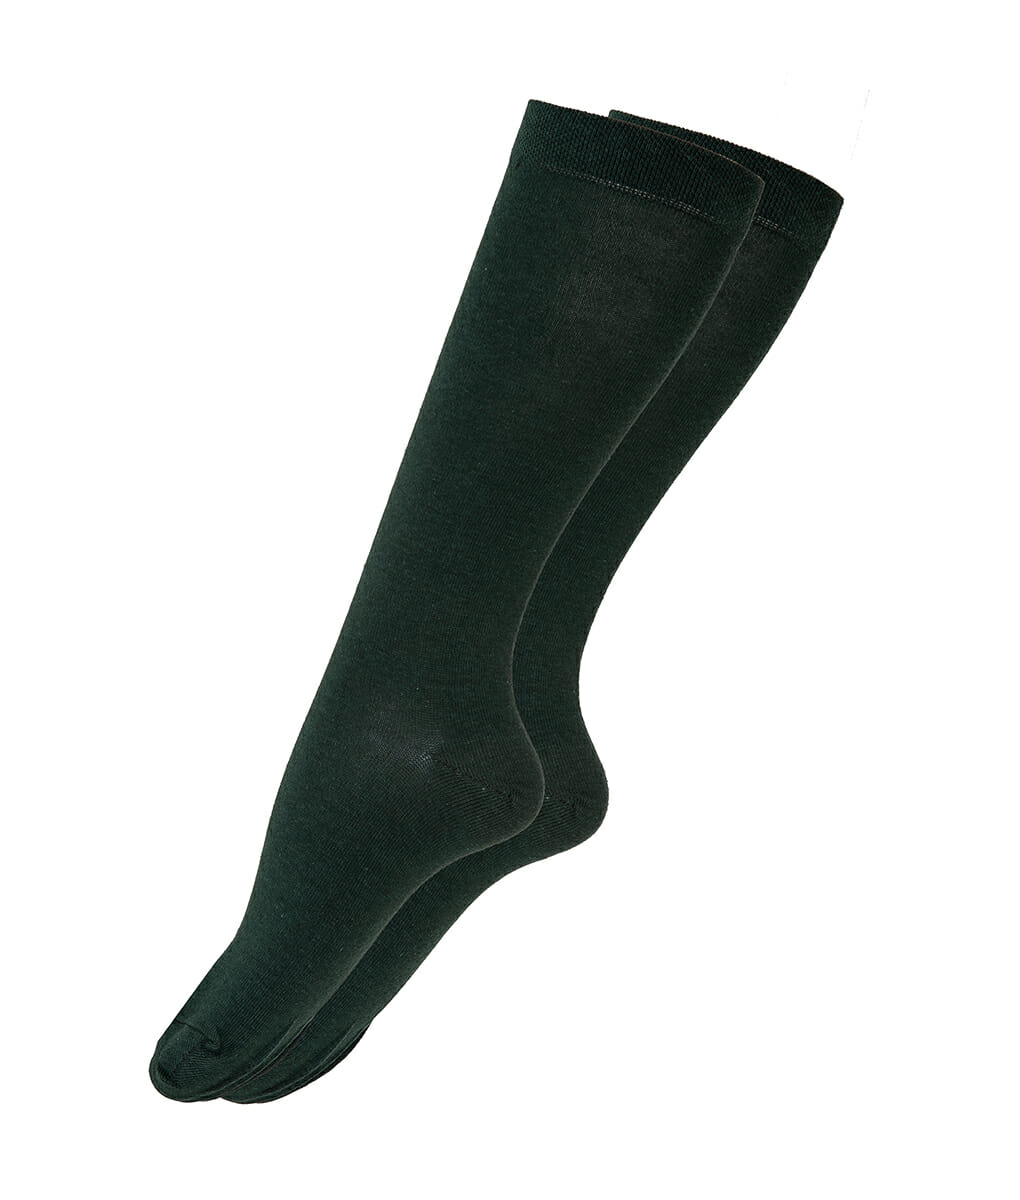 Γυναικεία βαμβακερή κάλτσα μέχρι το γόνατο πράσινη 4396 Πράσινο